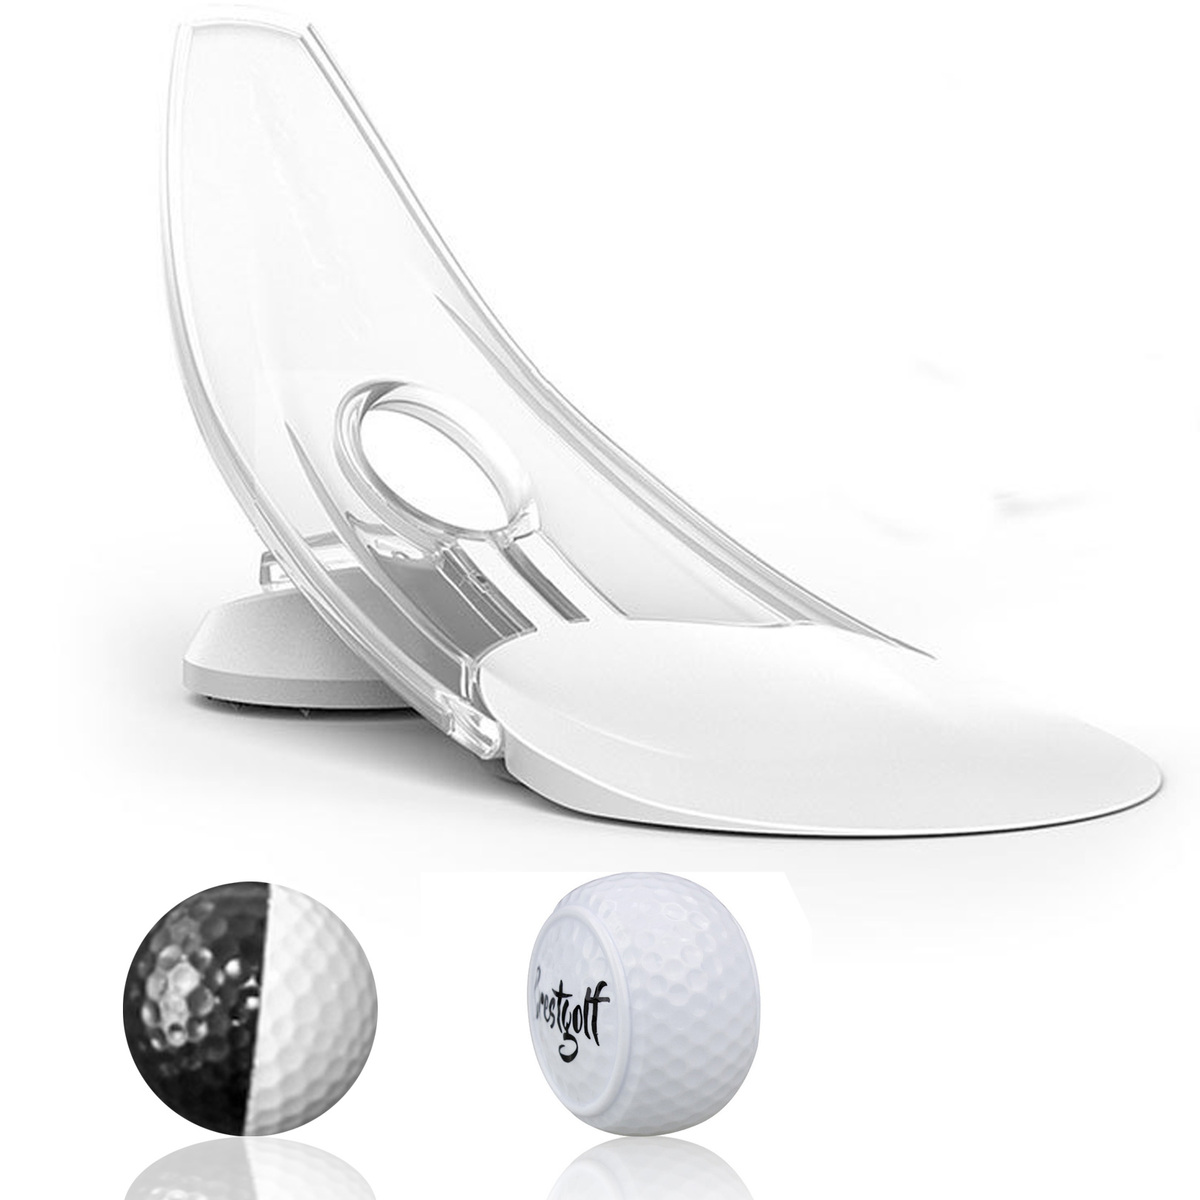  ゴルフ パター 練習 パッティング 練習用ボール 練習器具 室内 パターカップ (ボール2種)